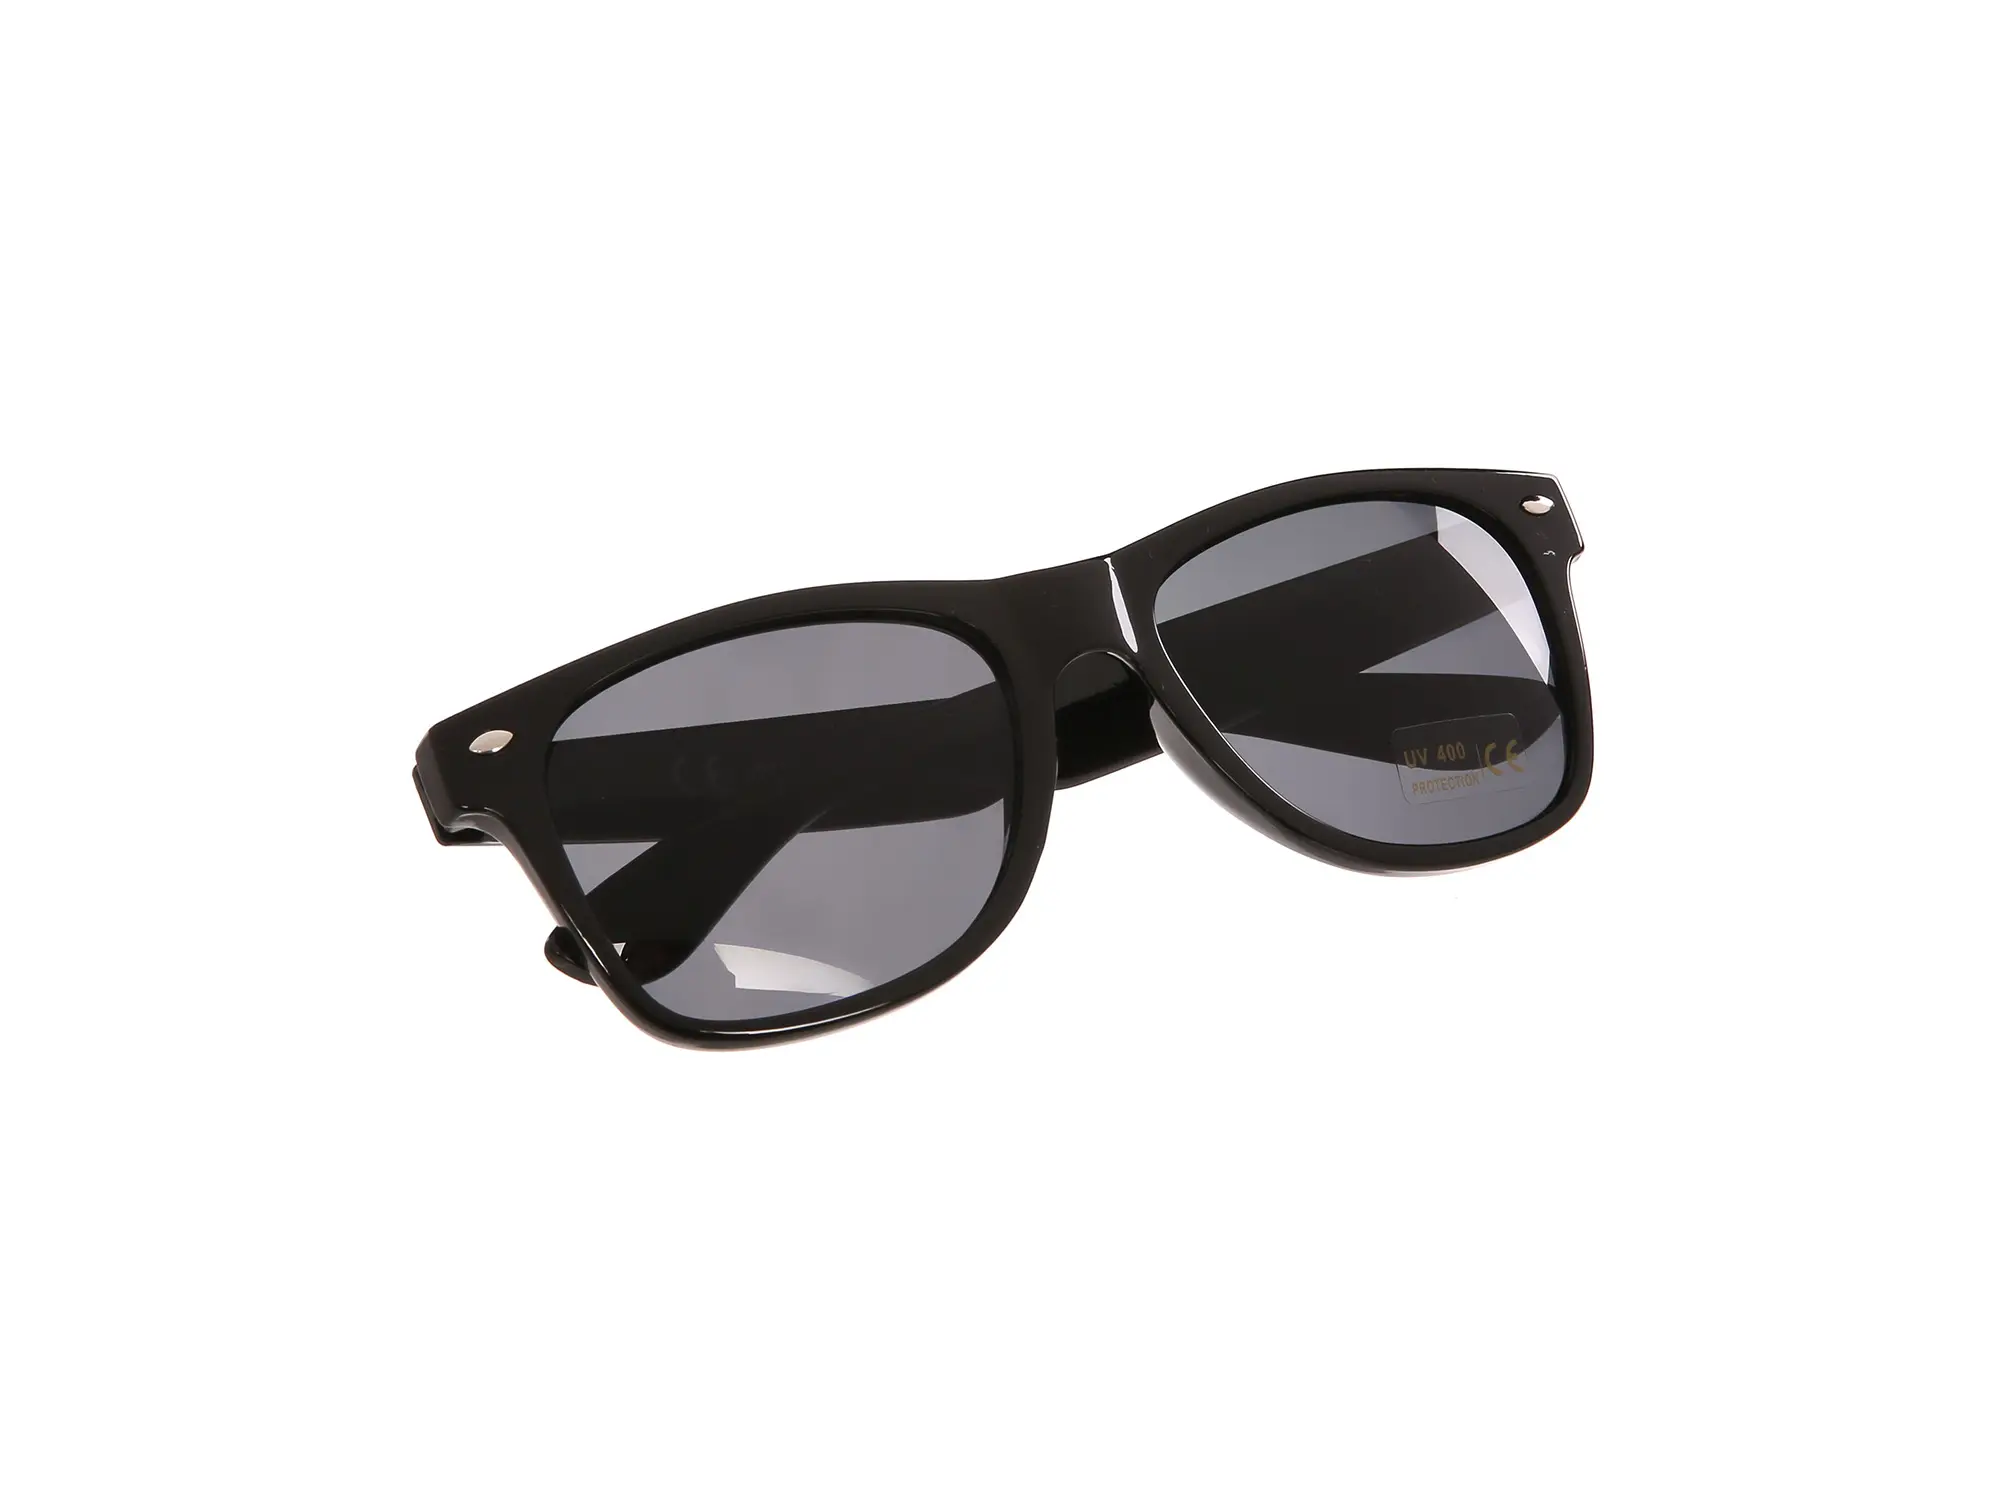 Sonnenbrille mit SIMSON/MZA Logo - Schwarz / Rauchgrau, Art.-Nr.: 10066296 - Bild 1